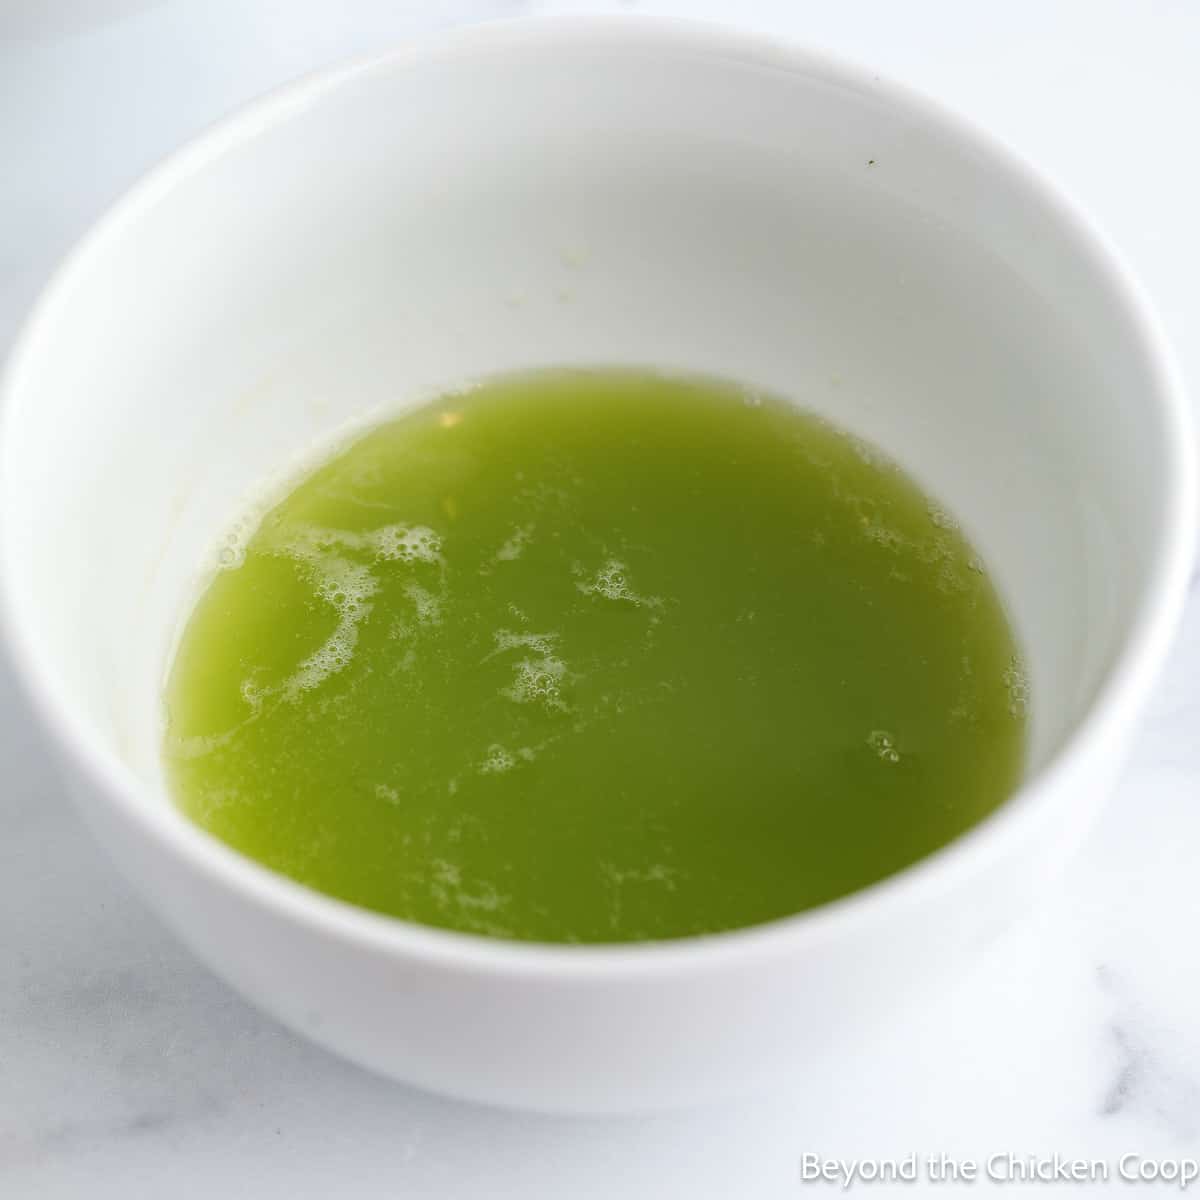 Green liquid in a white bowl. 